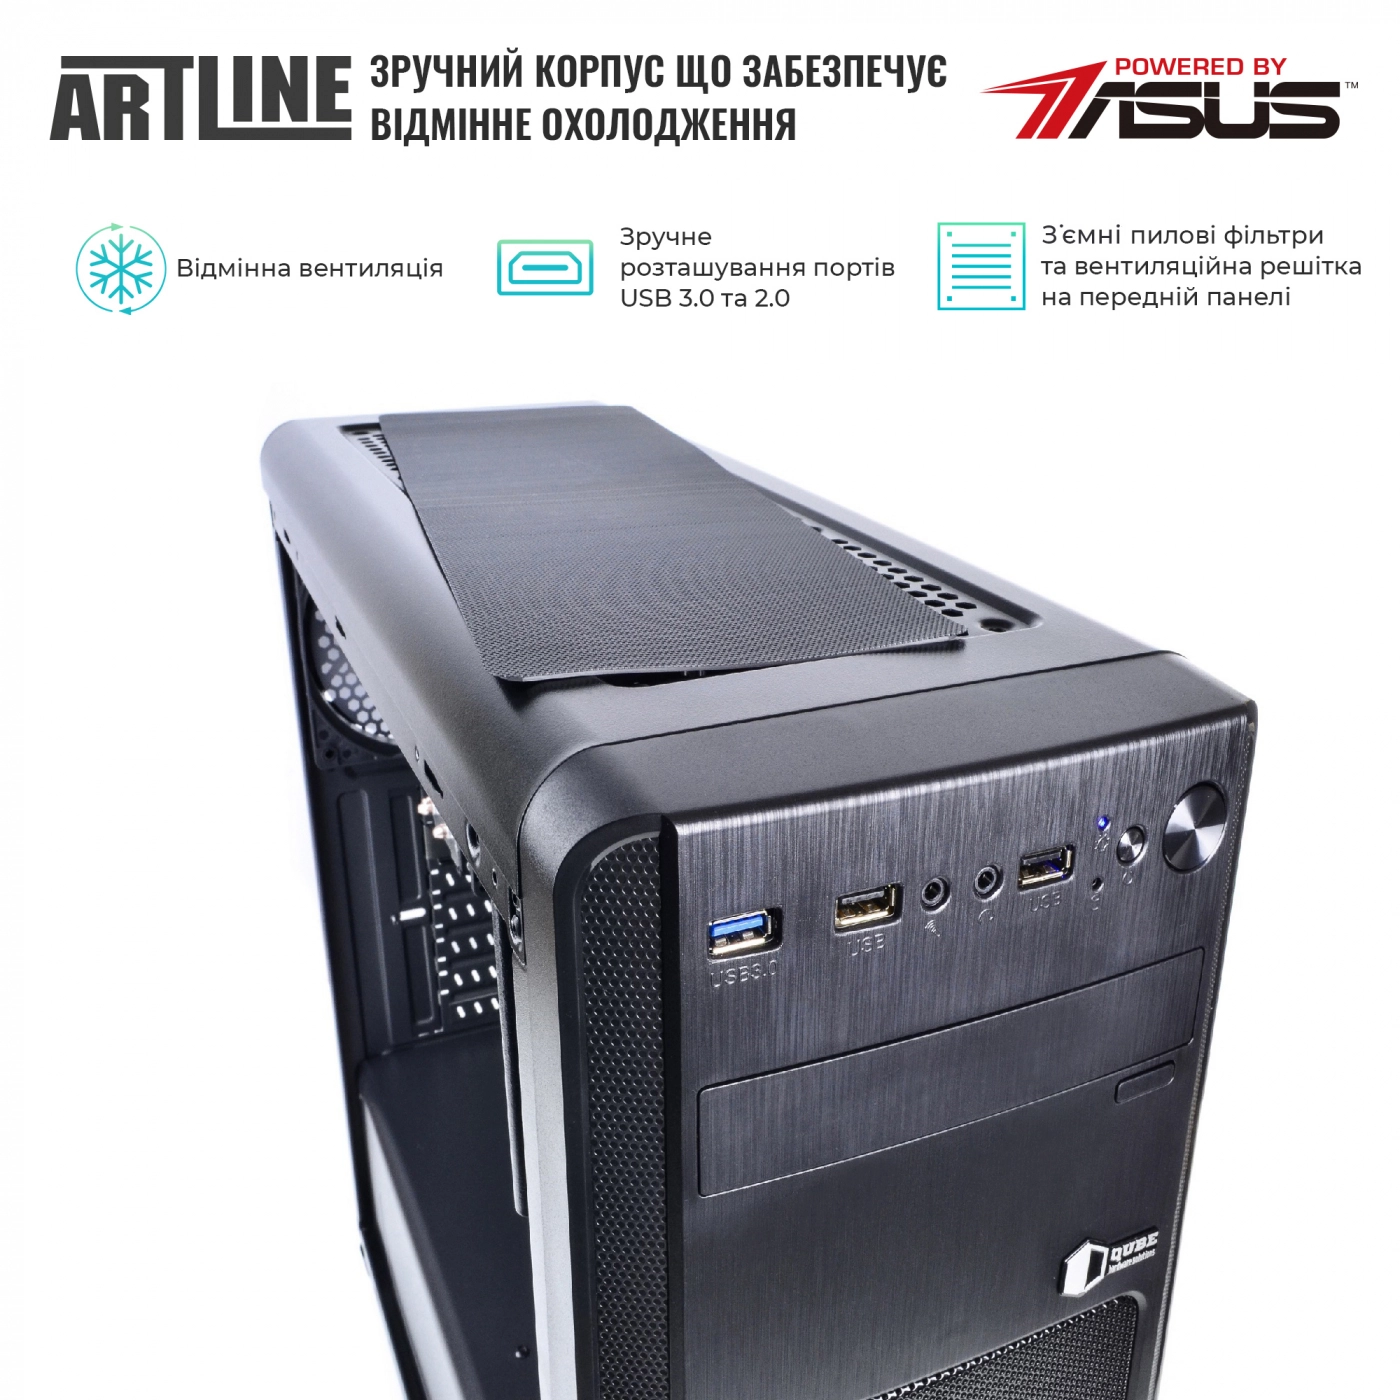 Купить Сервер ARTLINE Business T27v20 - фото 5